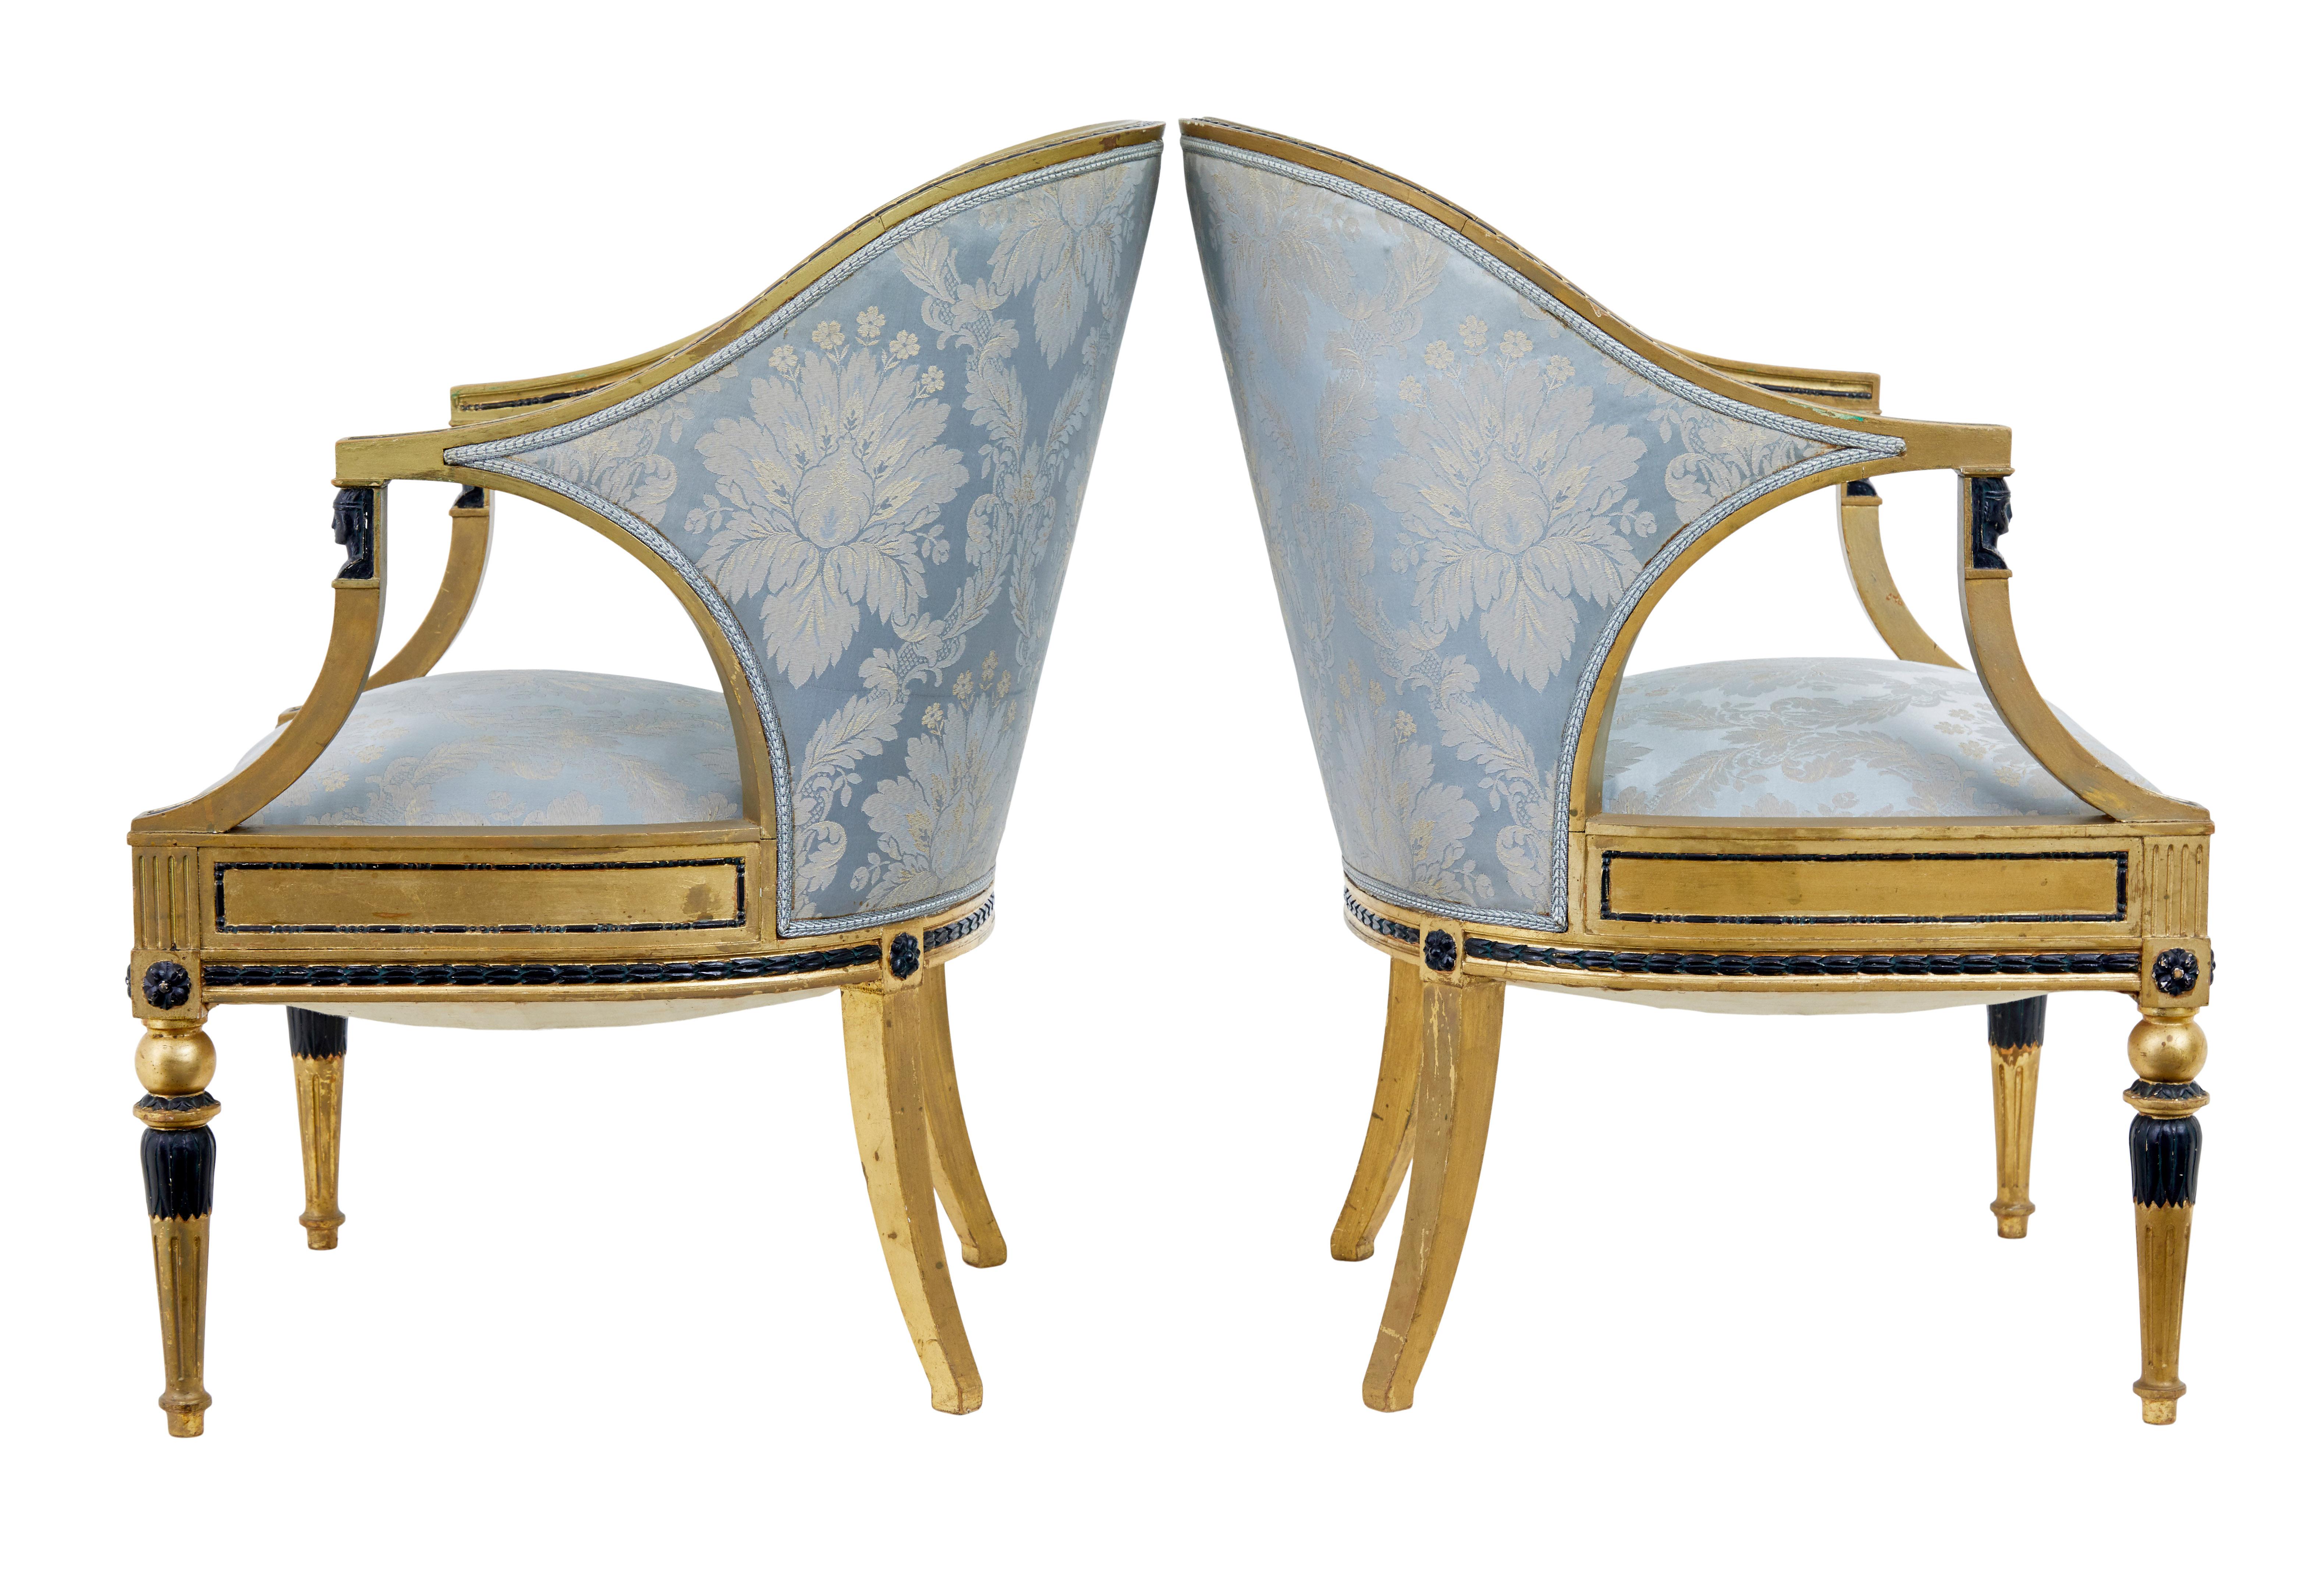 Paar vergoldete Göteborger Sessel aus dem 19. Jahrhundert, um 1870.

Feines Paar schwedischer vergoldeter Göteborger Sessel um 1870. Pantoffelartig geformte Rückenlehnen, die geformten Arme werden von ebonisierten, ägyptisch beeinflussten Beschlägen